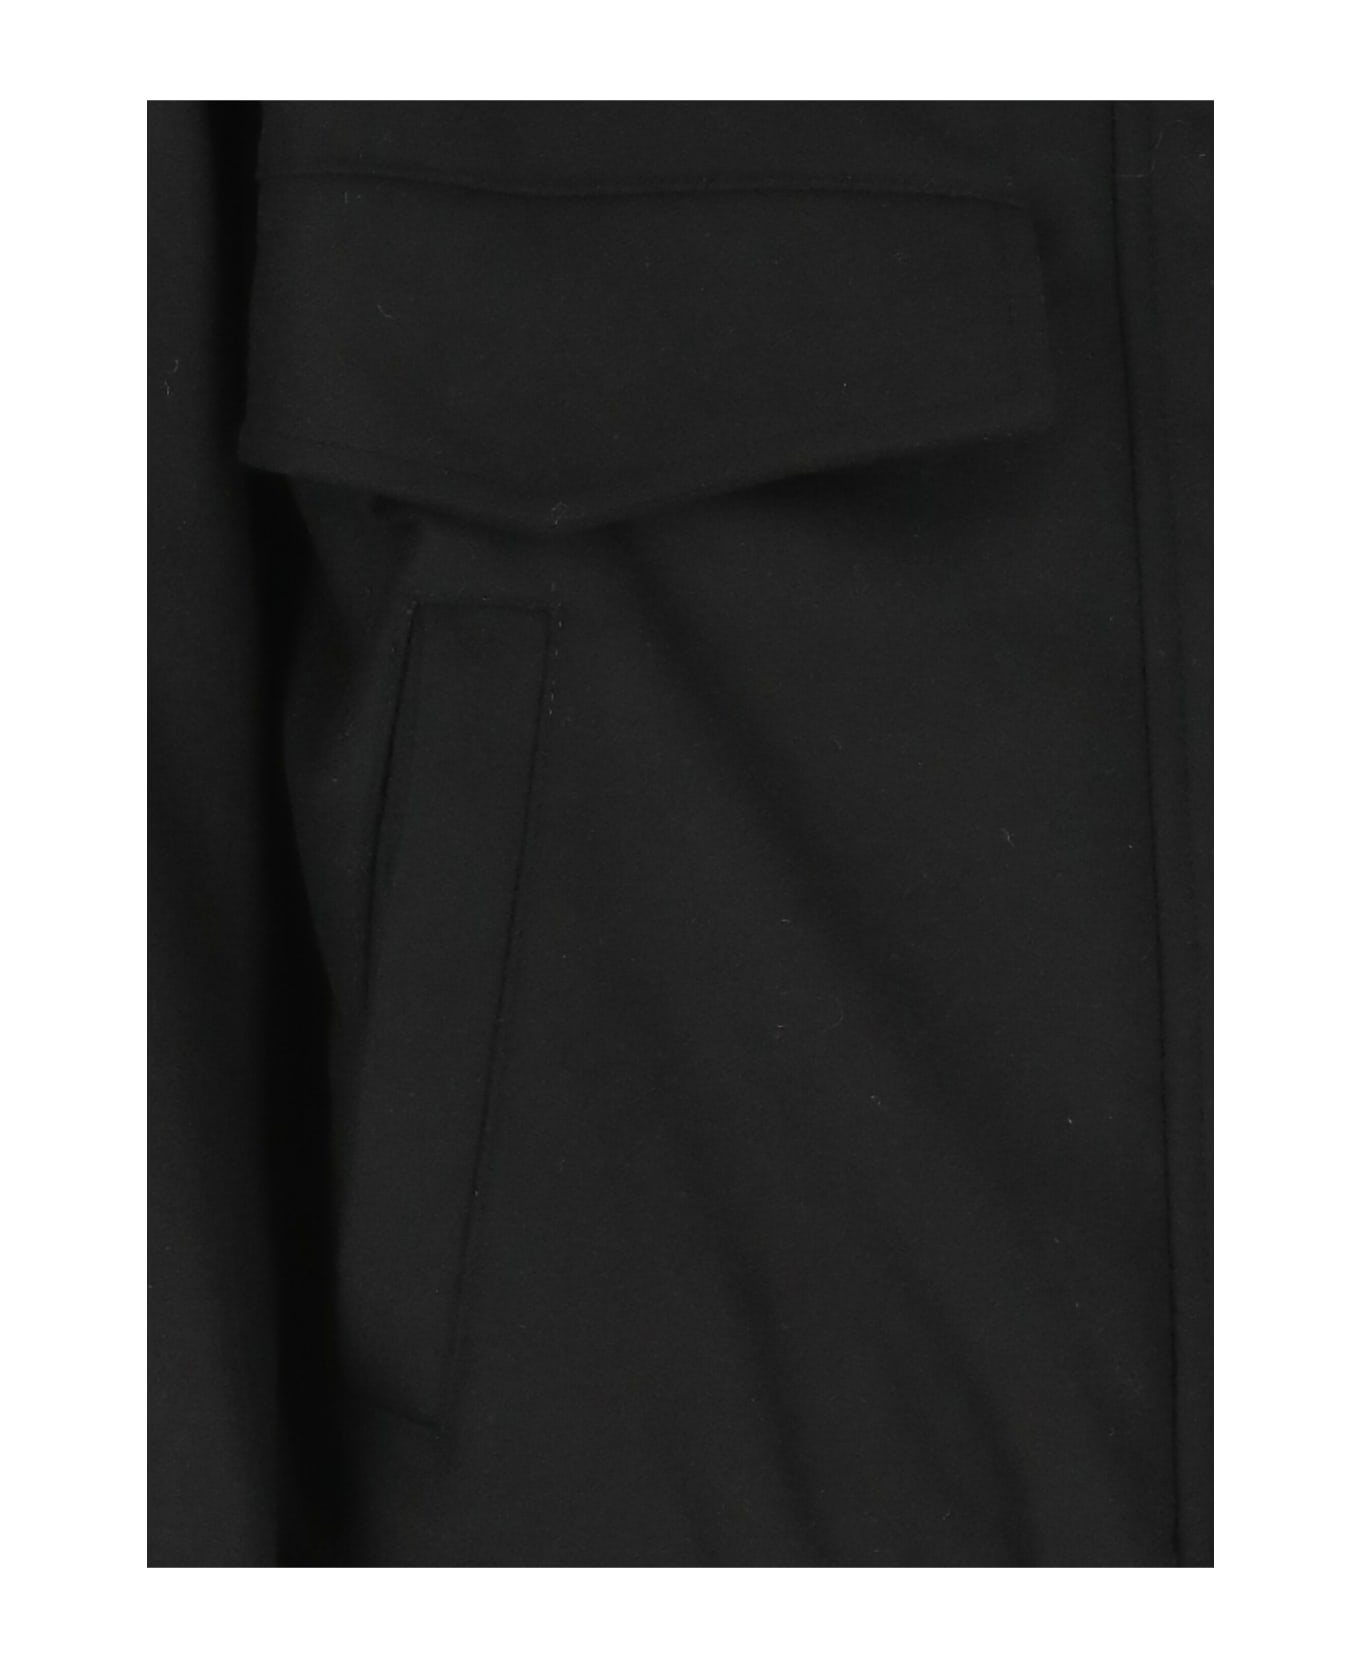 PT Torino Wool Padded Jacket - BLACK ブレザー